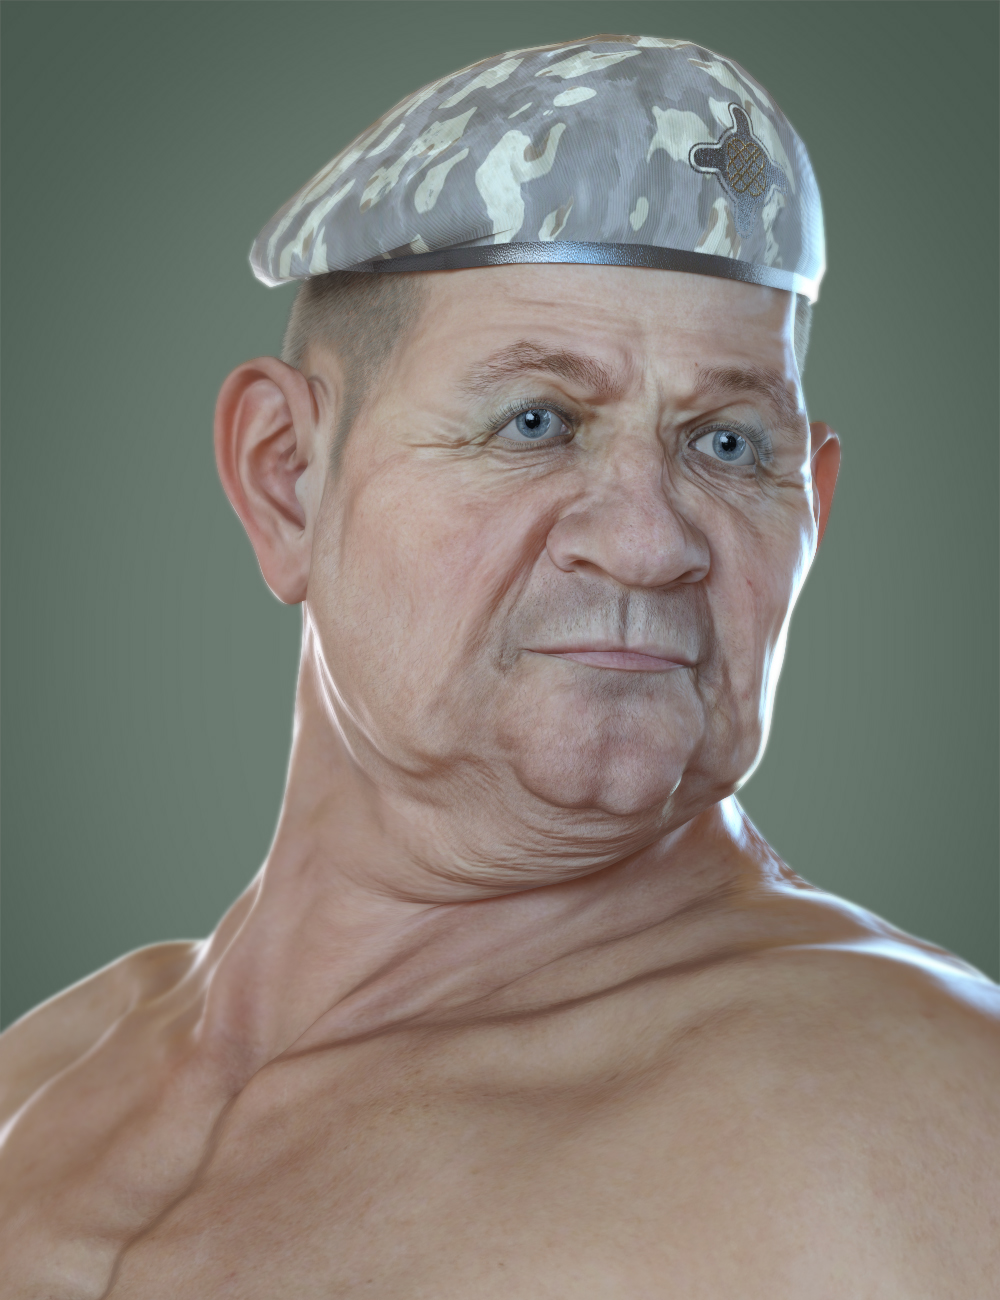 Colonel Kirk HD for Genesis 8.1 Male by: Deepsea, 3D Models by Daz 3D